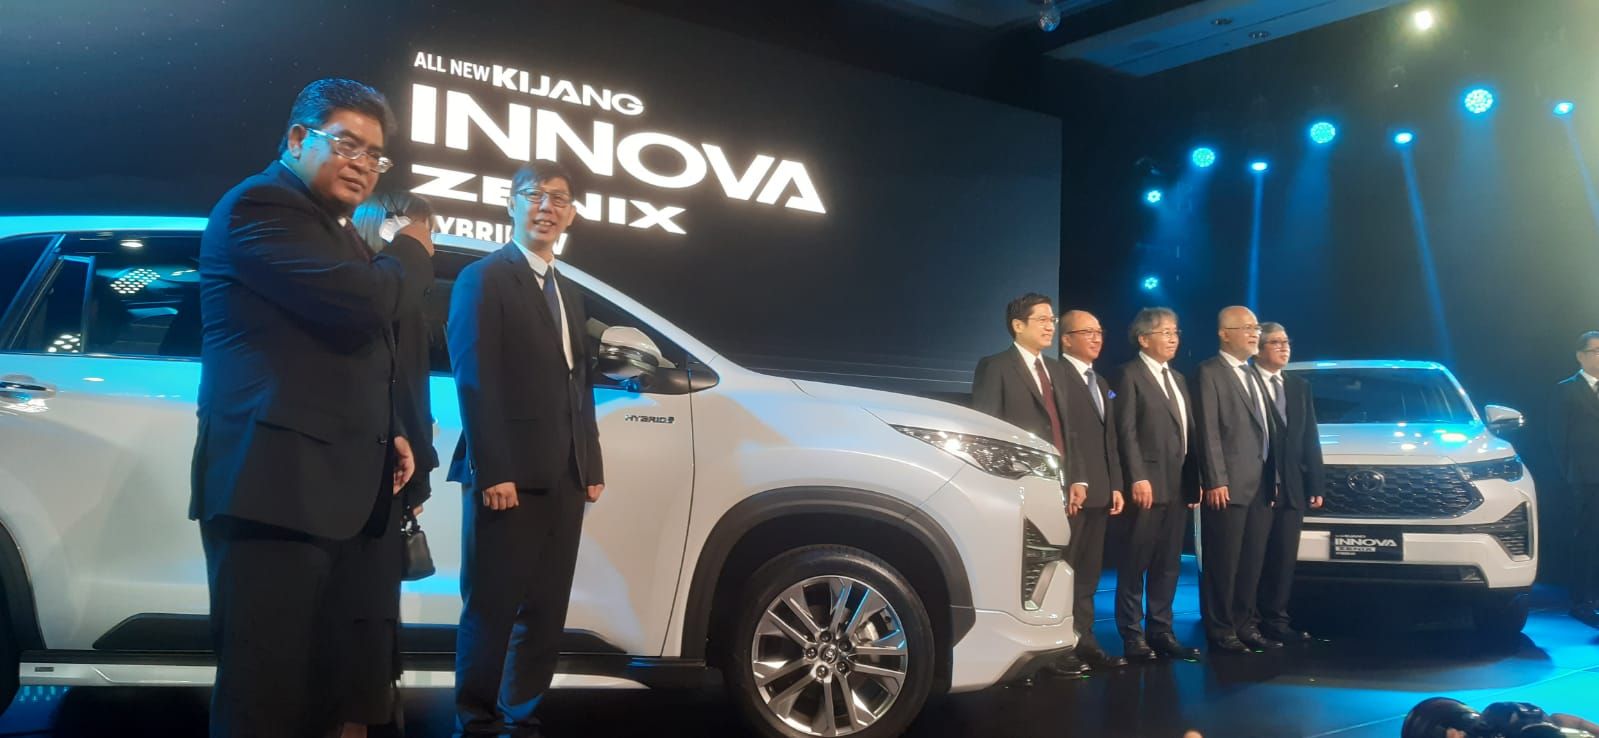 Peluncuran All New Toyota Kijang Innova Zenix di Jakarta, Senin (21/11/2022).